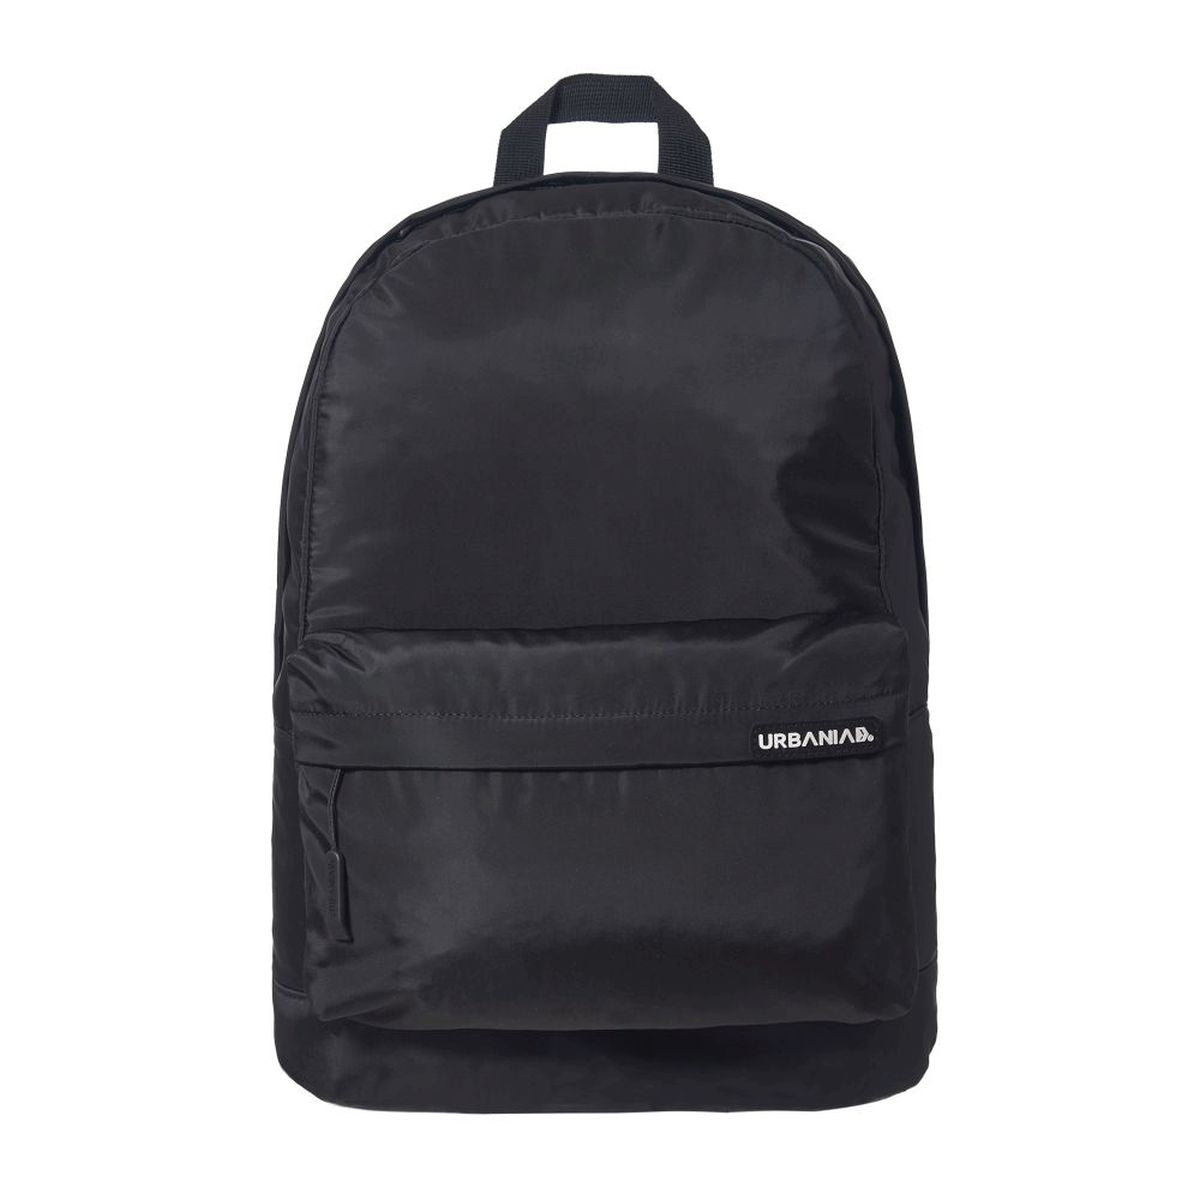 Backpack Miranda Basic Charcoal